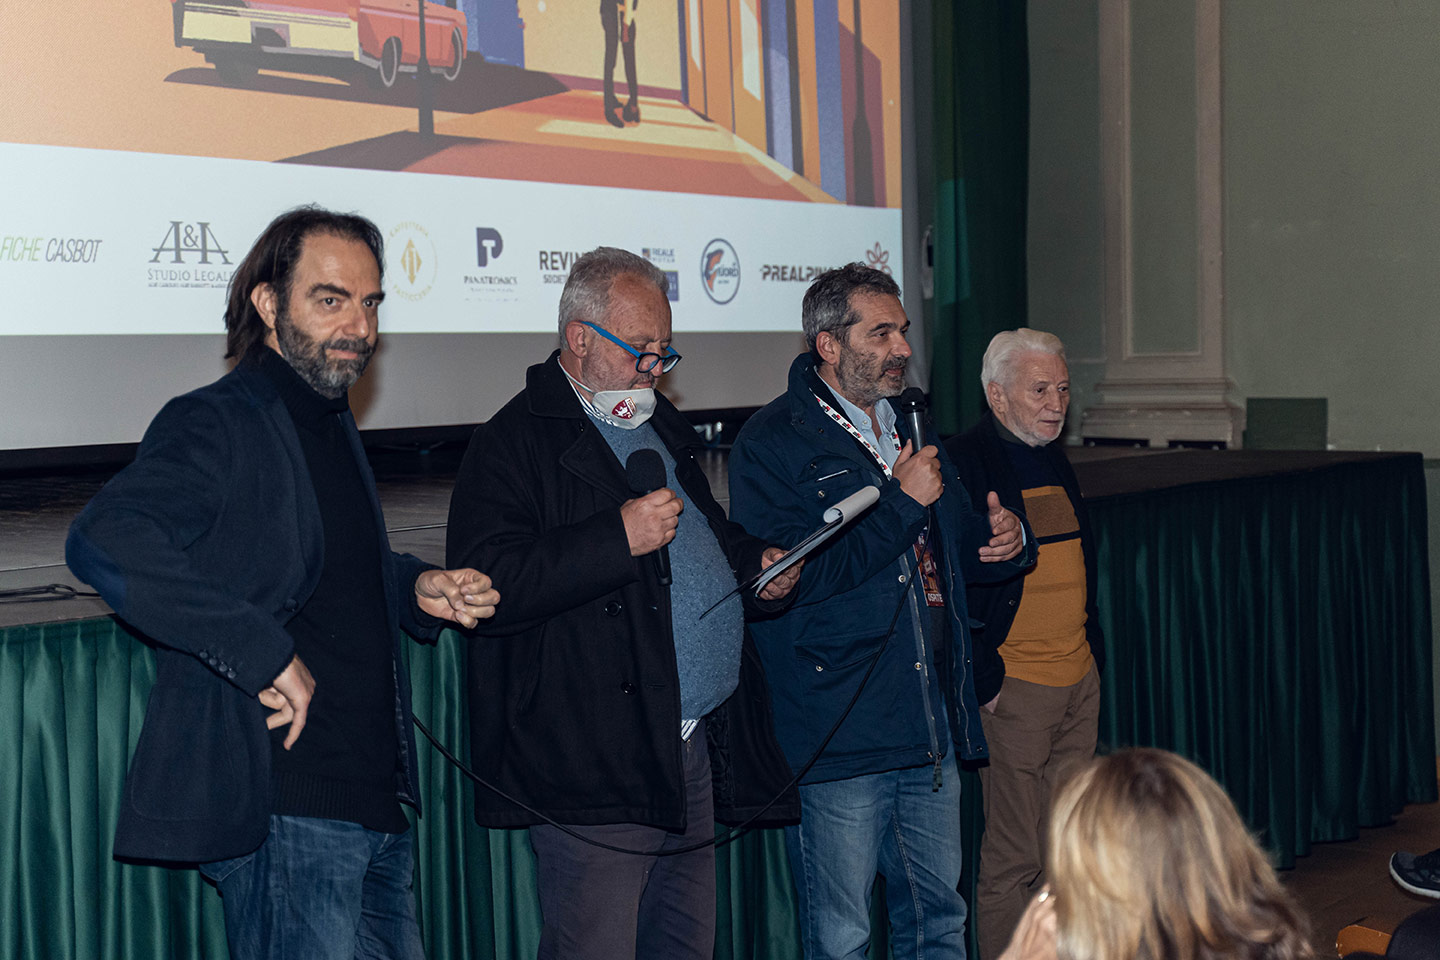 Effetto cinema Il giovane corsaro, Pasolini da Bologna - Neri Marcorè, Steve Della Casa,Emilio Marrese, Celeste Colombo